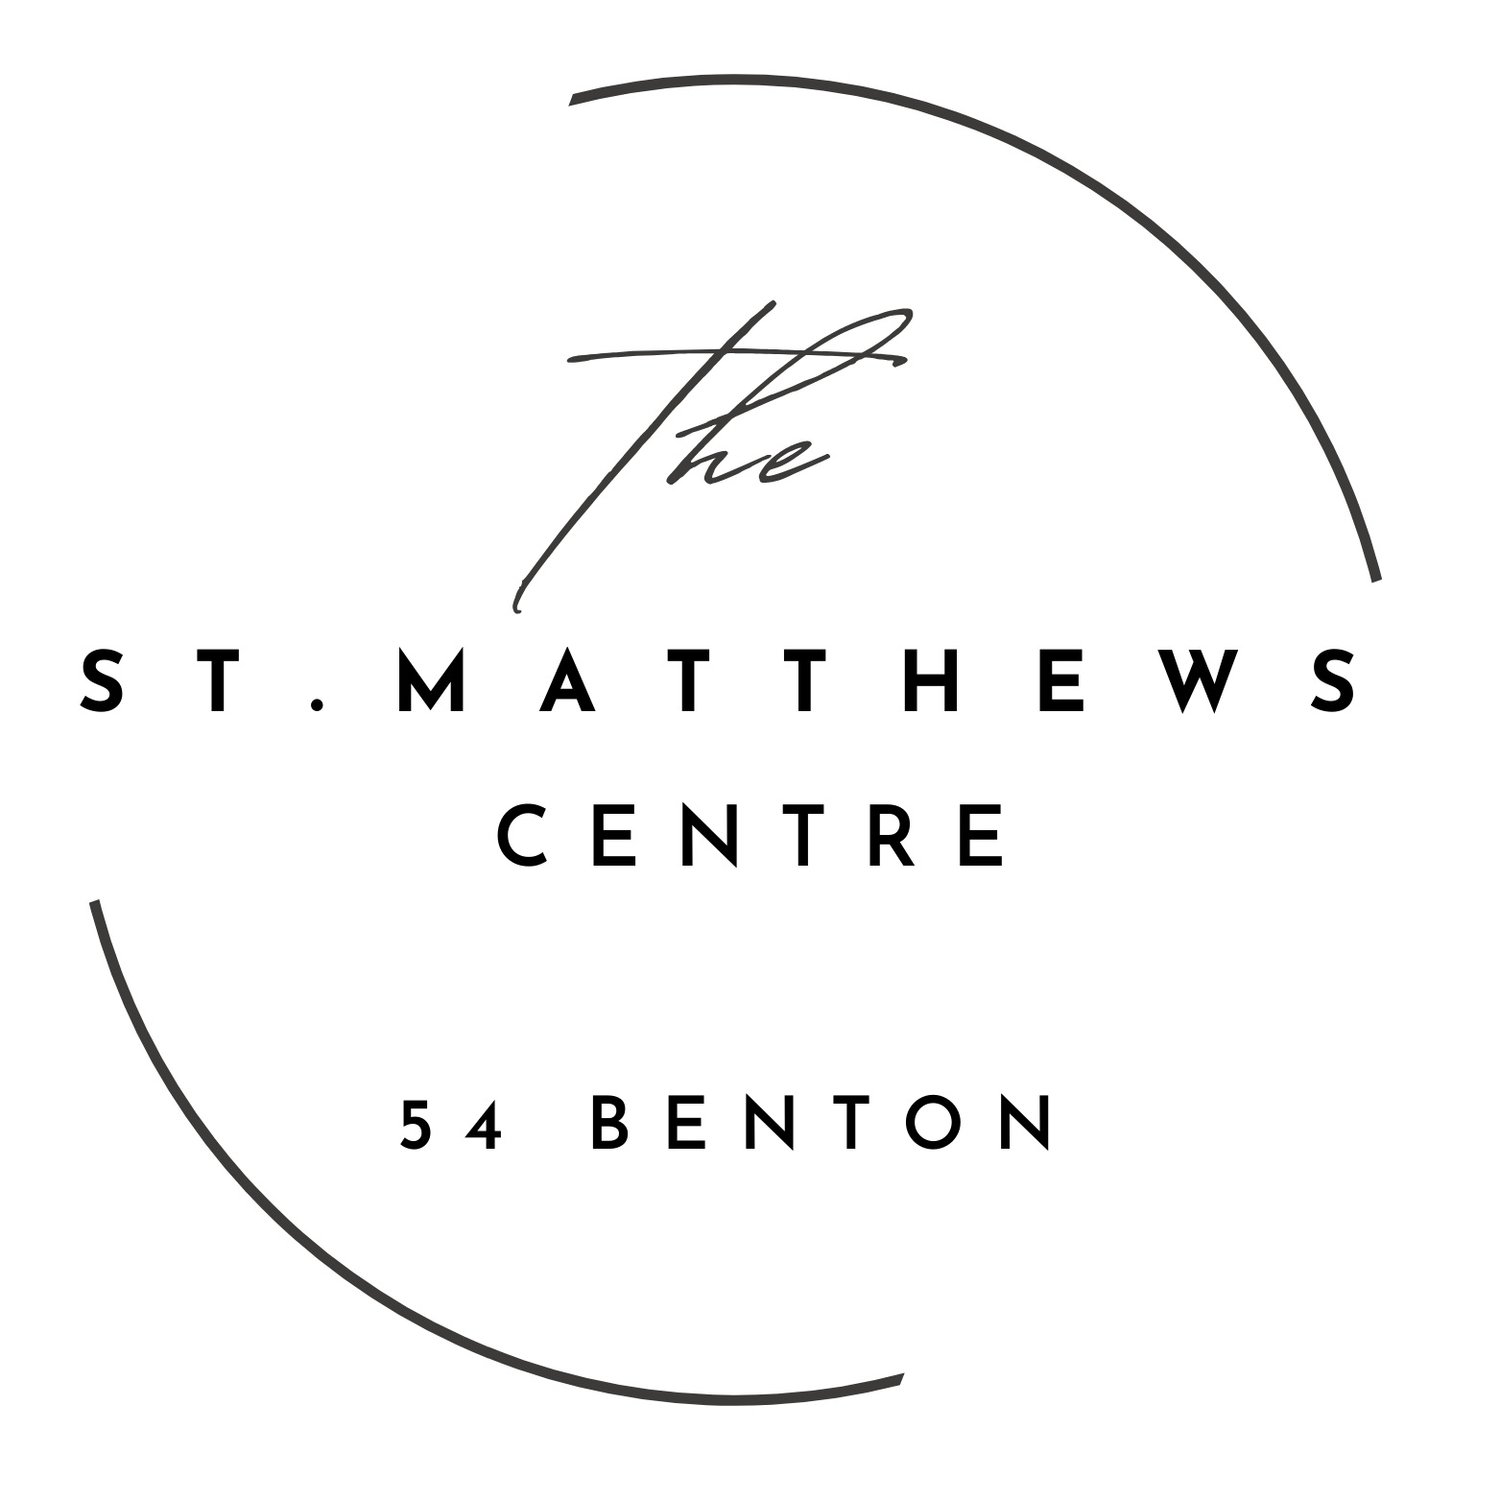 The St. Matthews Centre